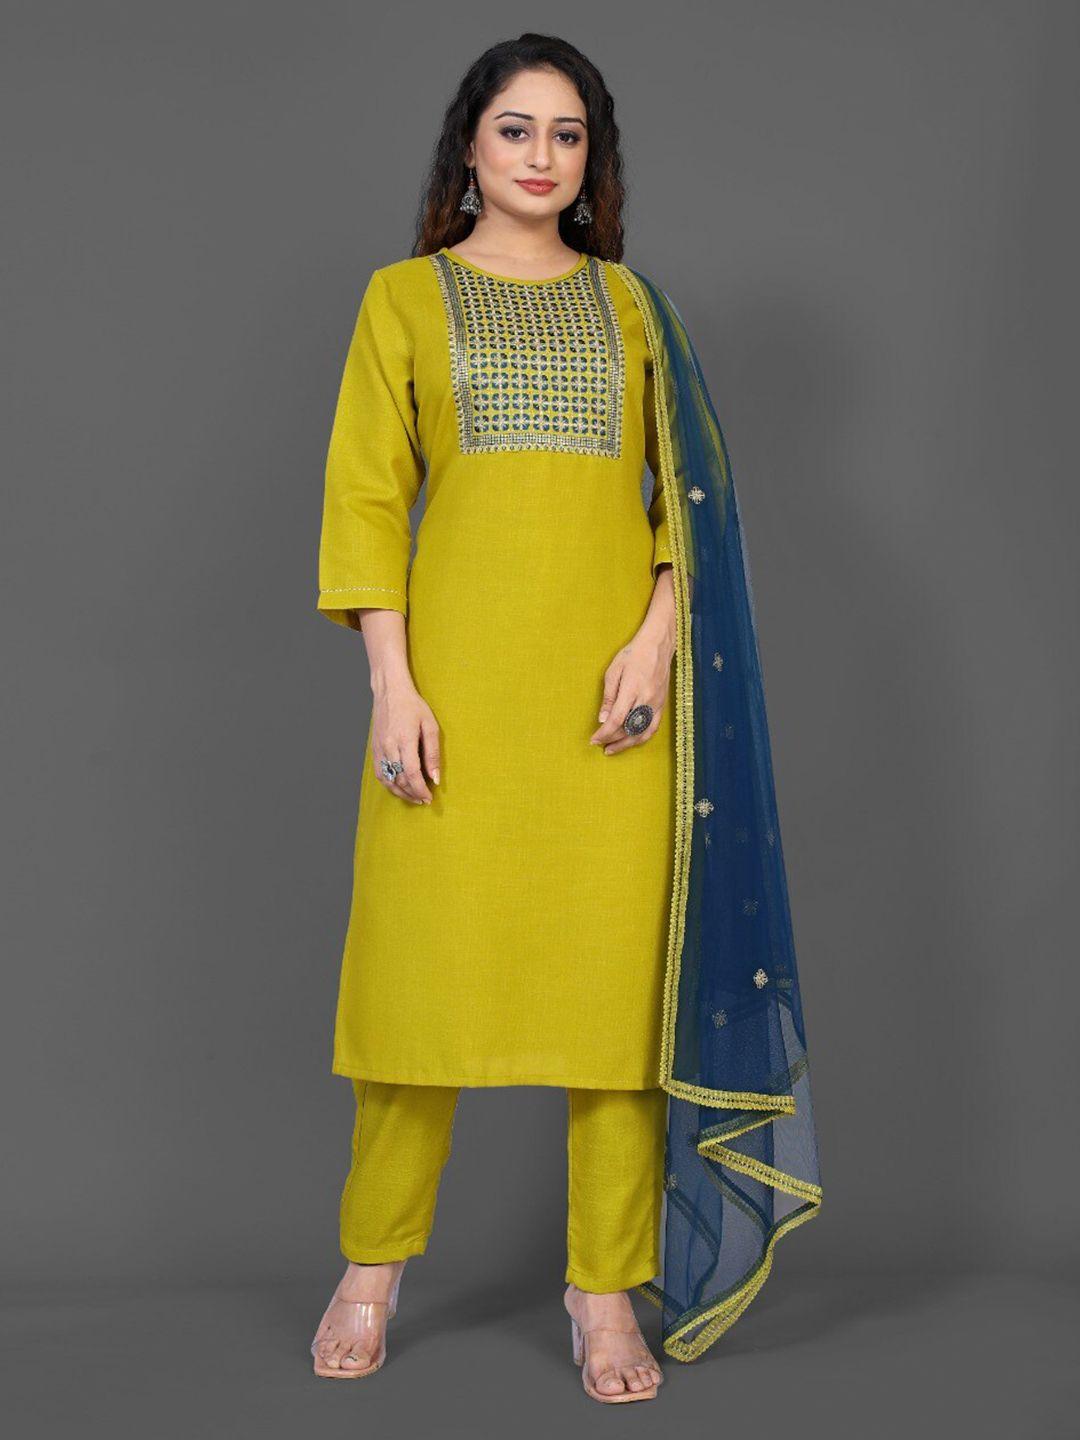 rivama women yellow & blue ethnic motifs embroidered kurta